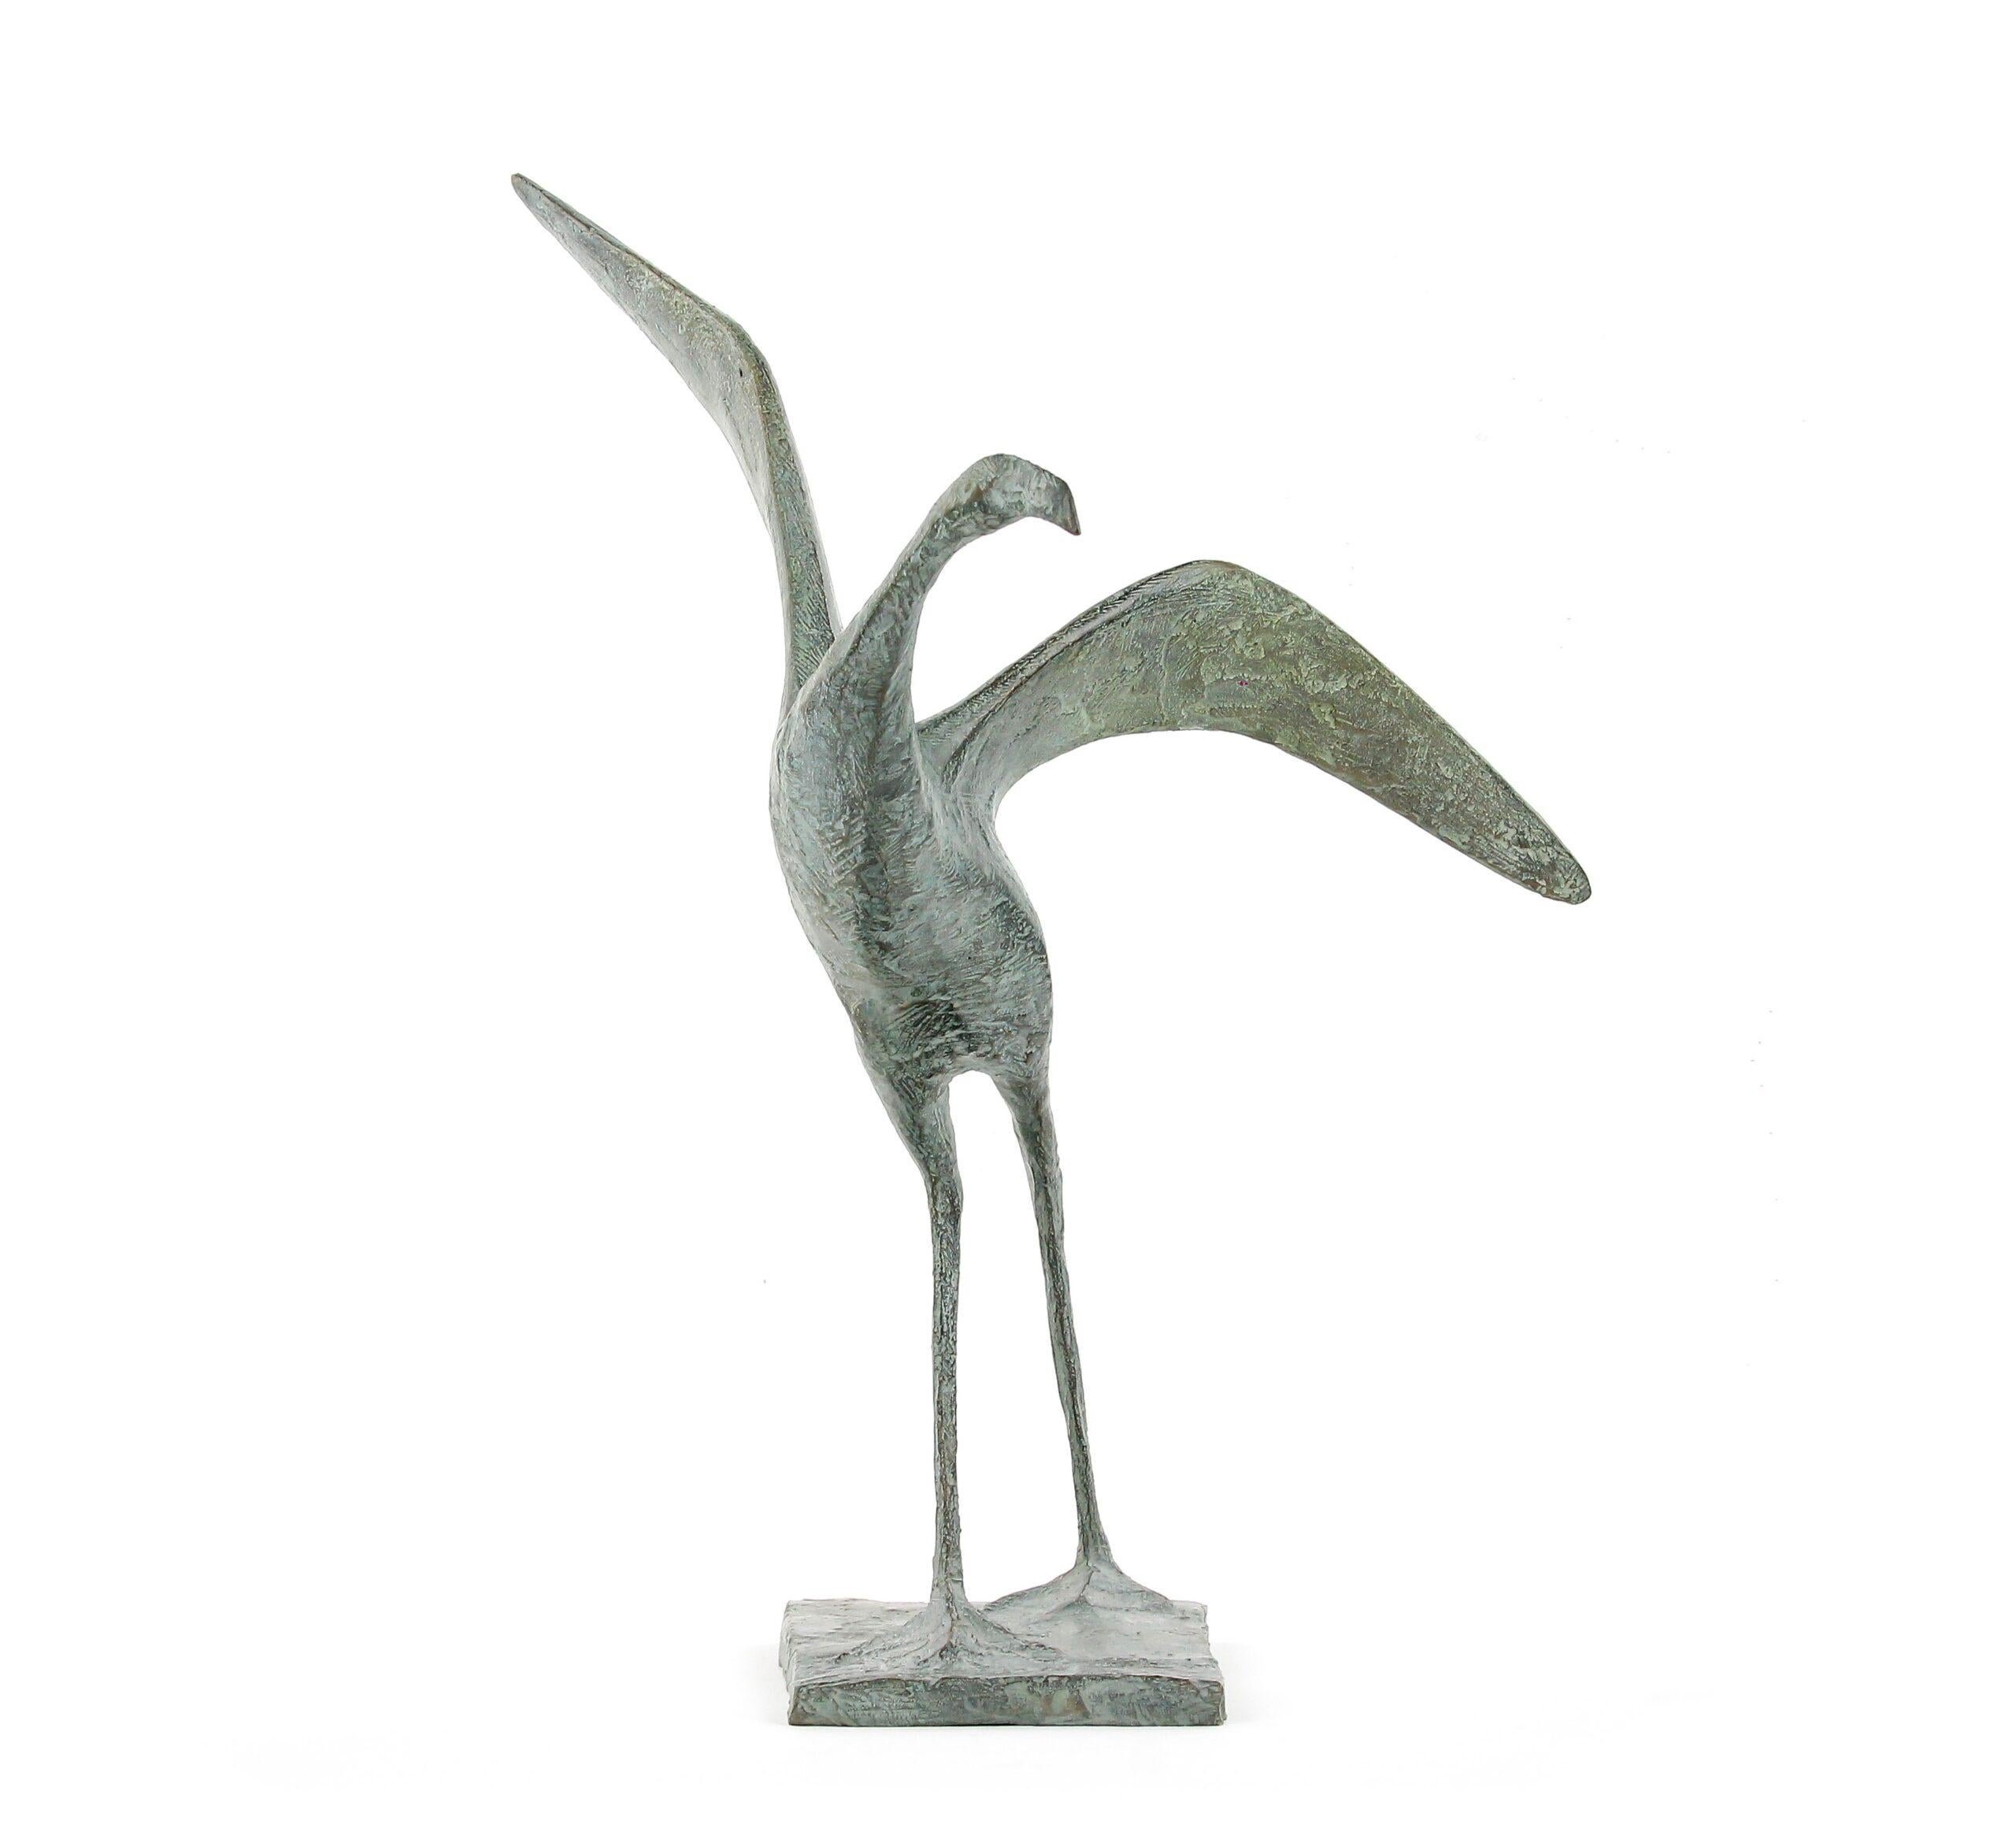 Flight VI est une sculpture en bronze de l'artiste contemporain français Pierre Yermia, dont les dimensions sont de 32 × 34 × 32 cm (12,6 × 13,4 × 12,6 in). La sculpture est signée et numérotée, elle fait partie d'une édition limitée à 8 exemplaires